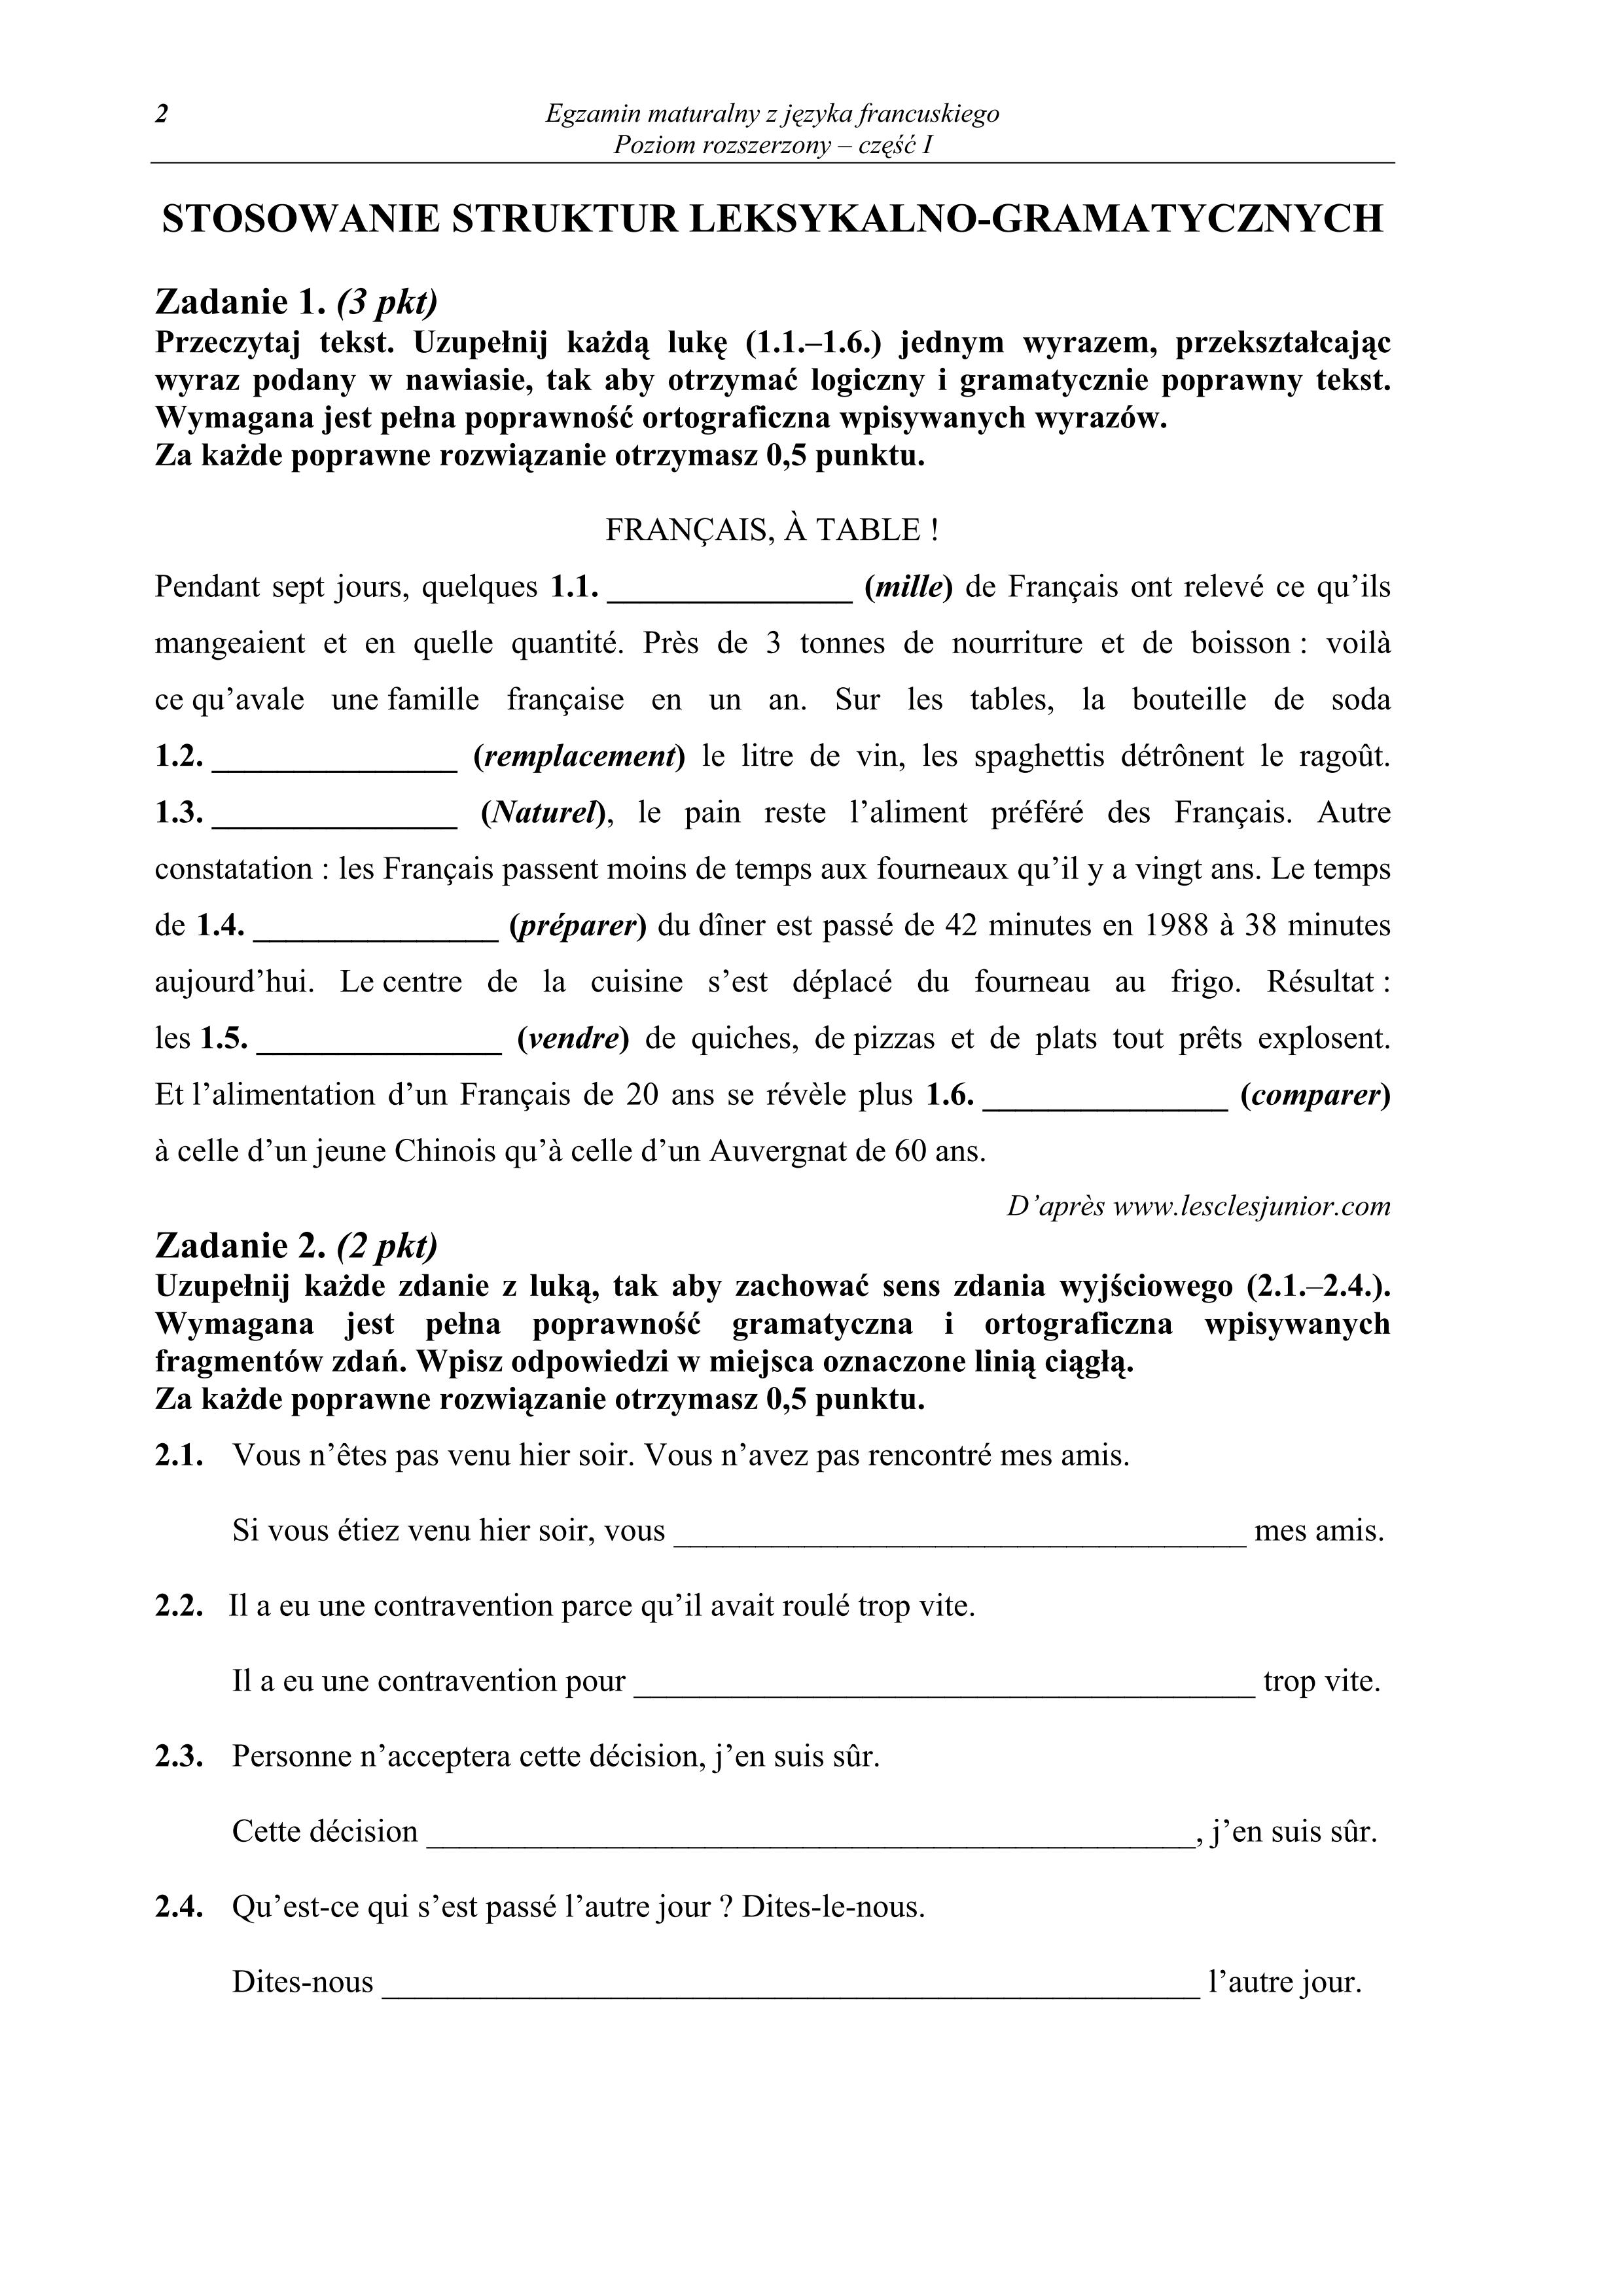 pytania-jezyk-francuski-poziom-rozszerzony-matura-2011-cz1 - 2